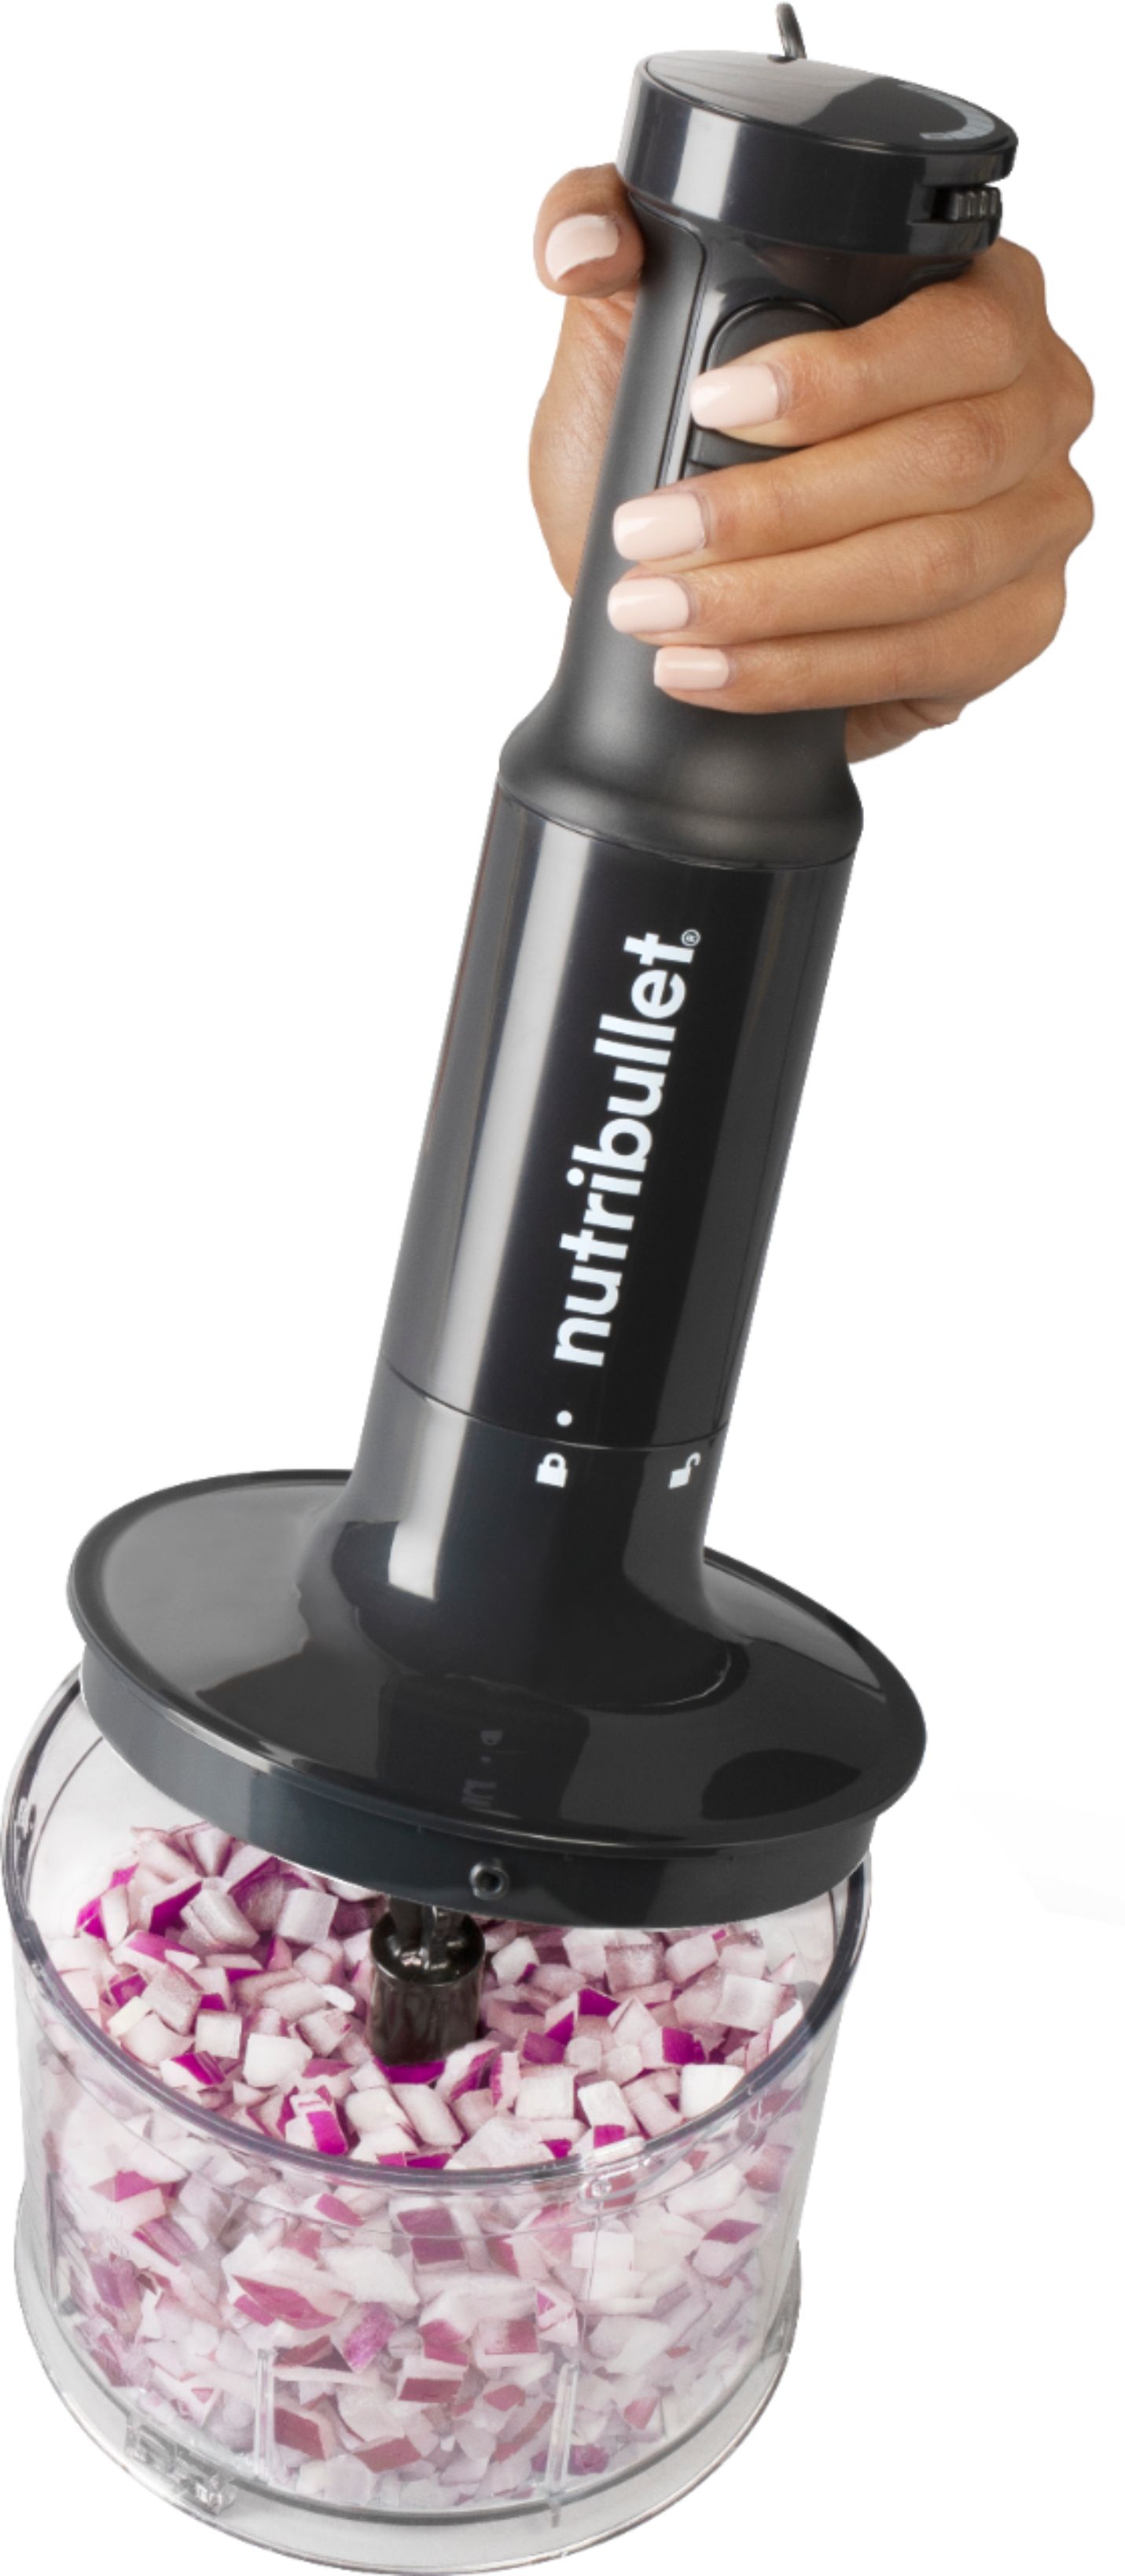 Nutribullet® Immersion Blender Deluxe